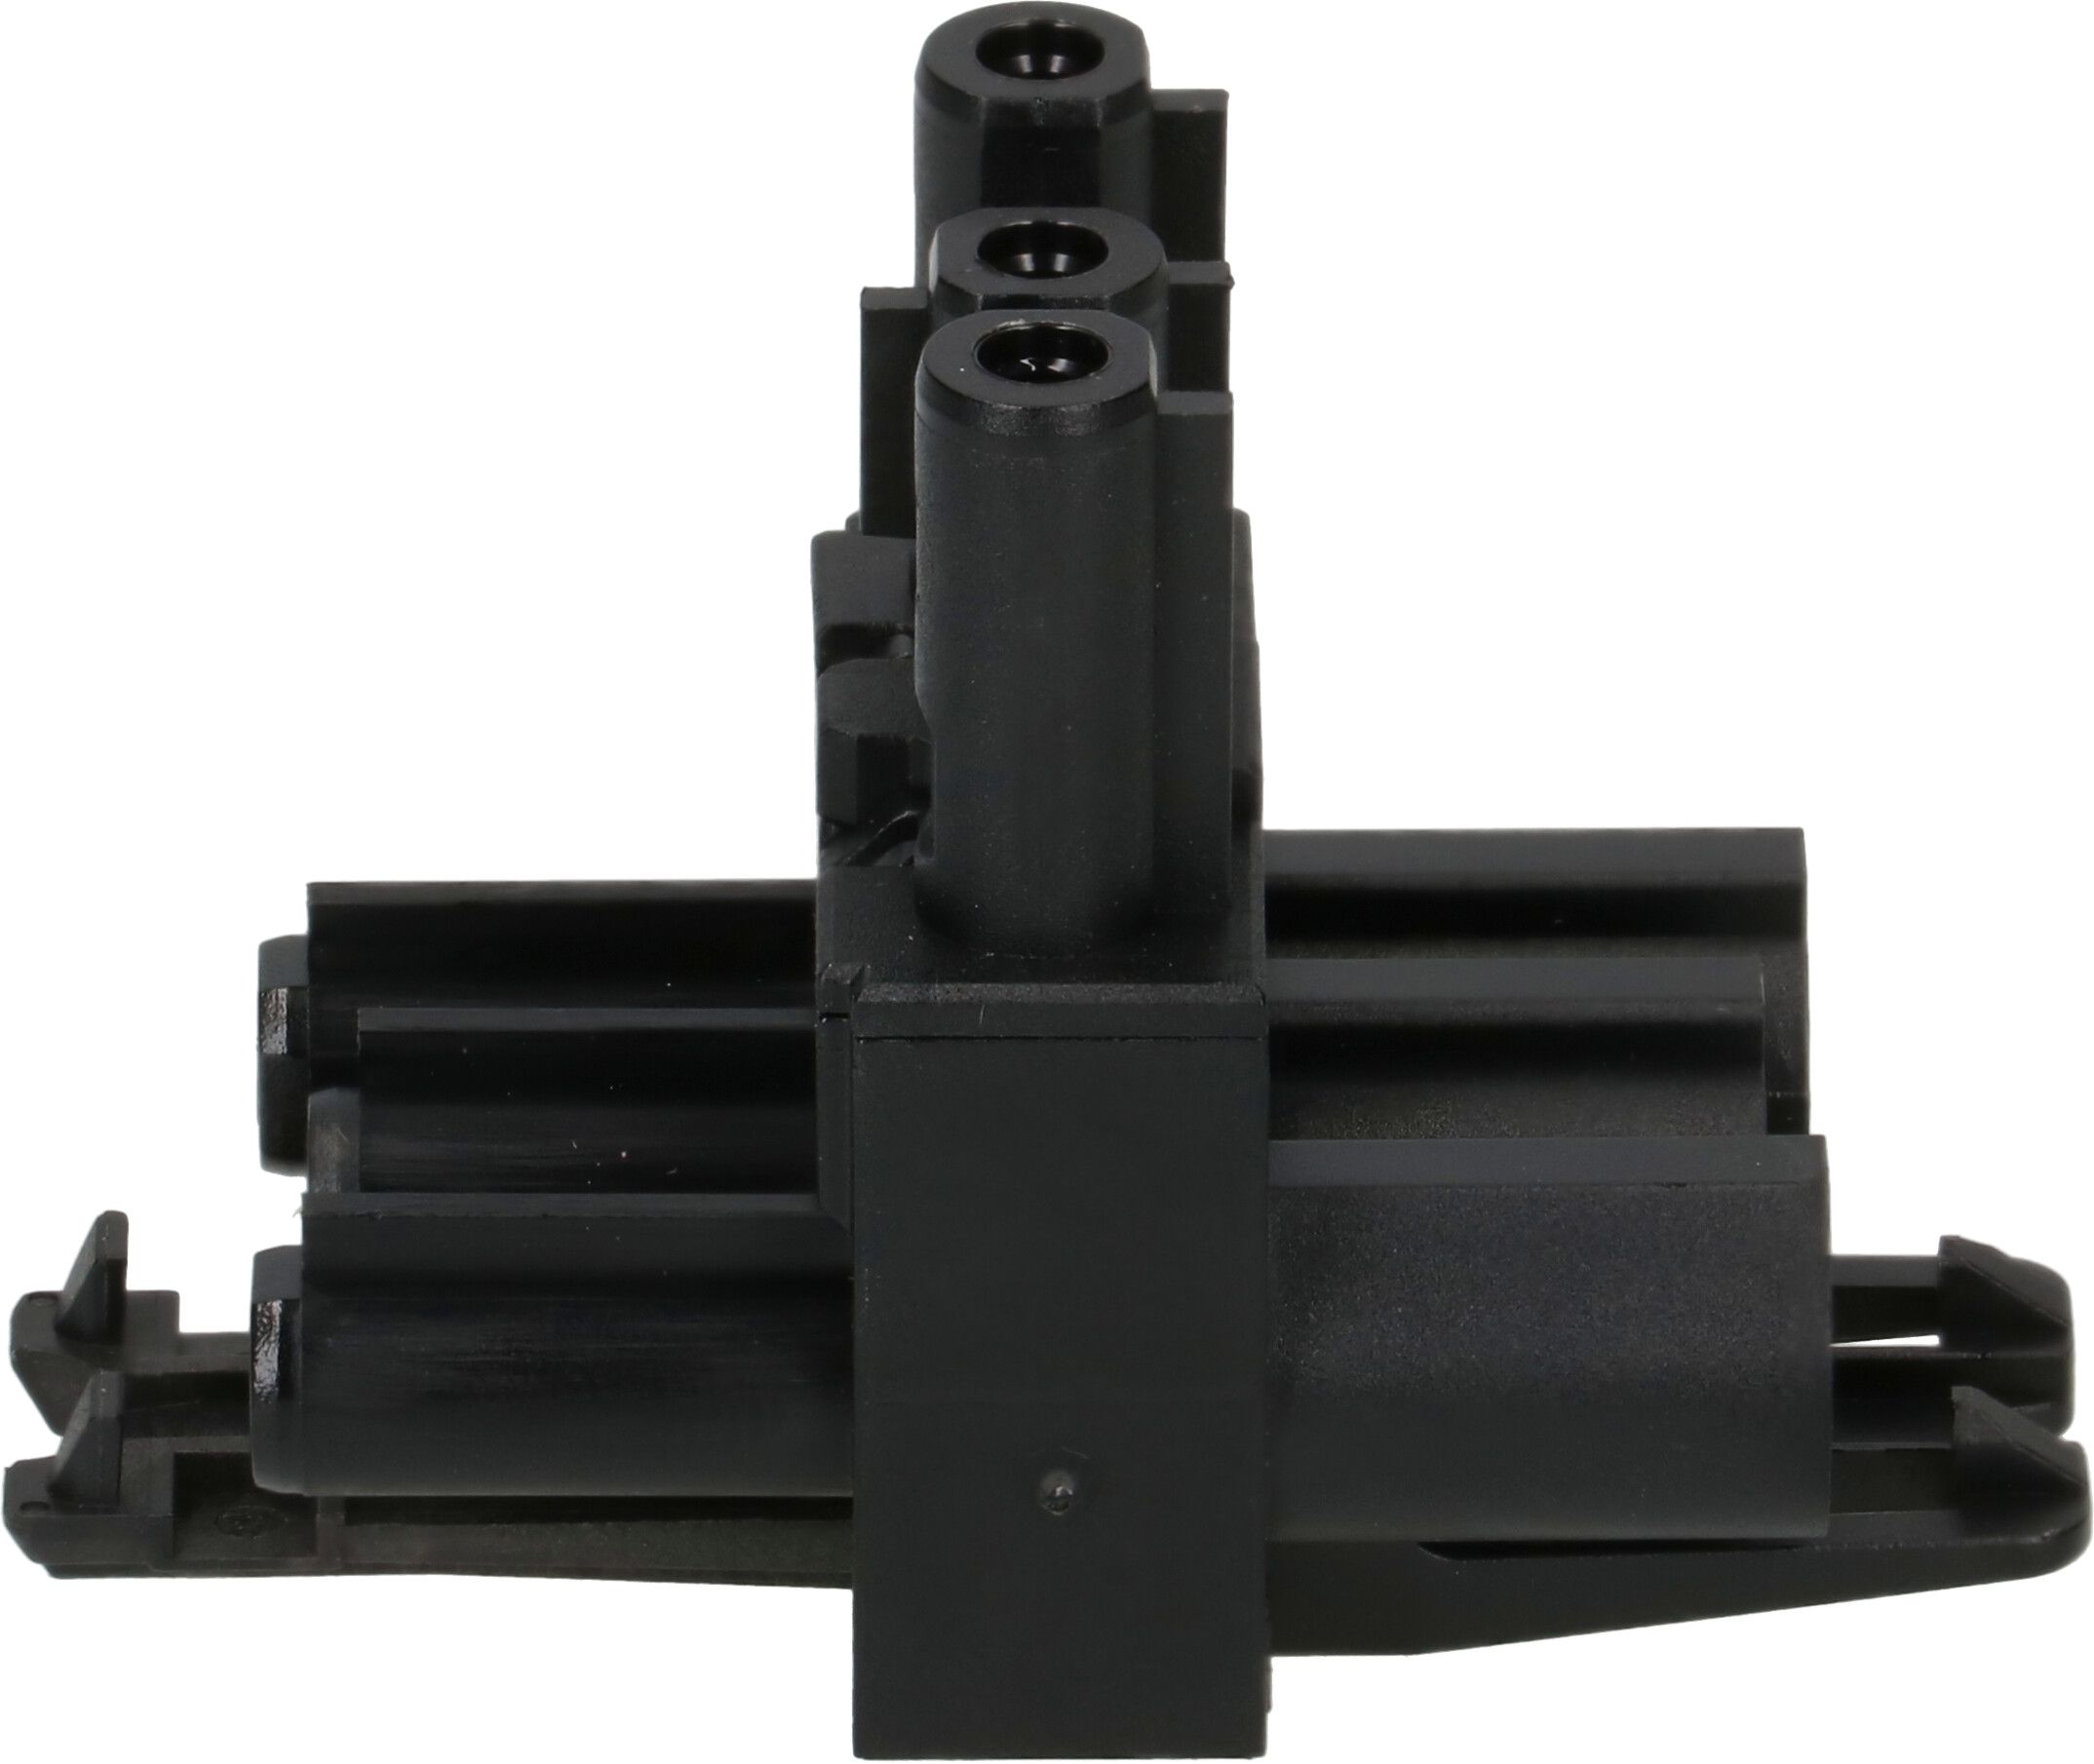 Verteilerblock AC 166 GVT 3/3 schwarz anreihbar